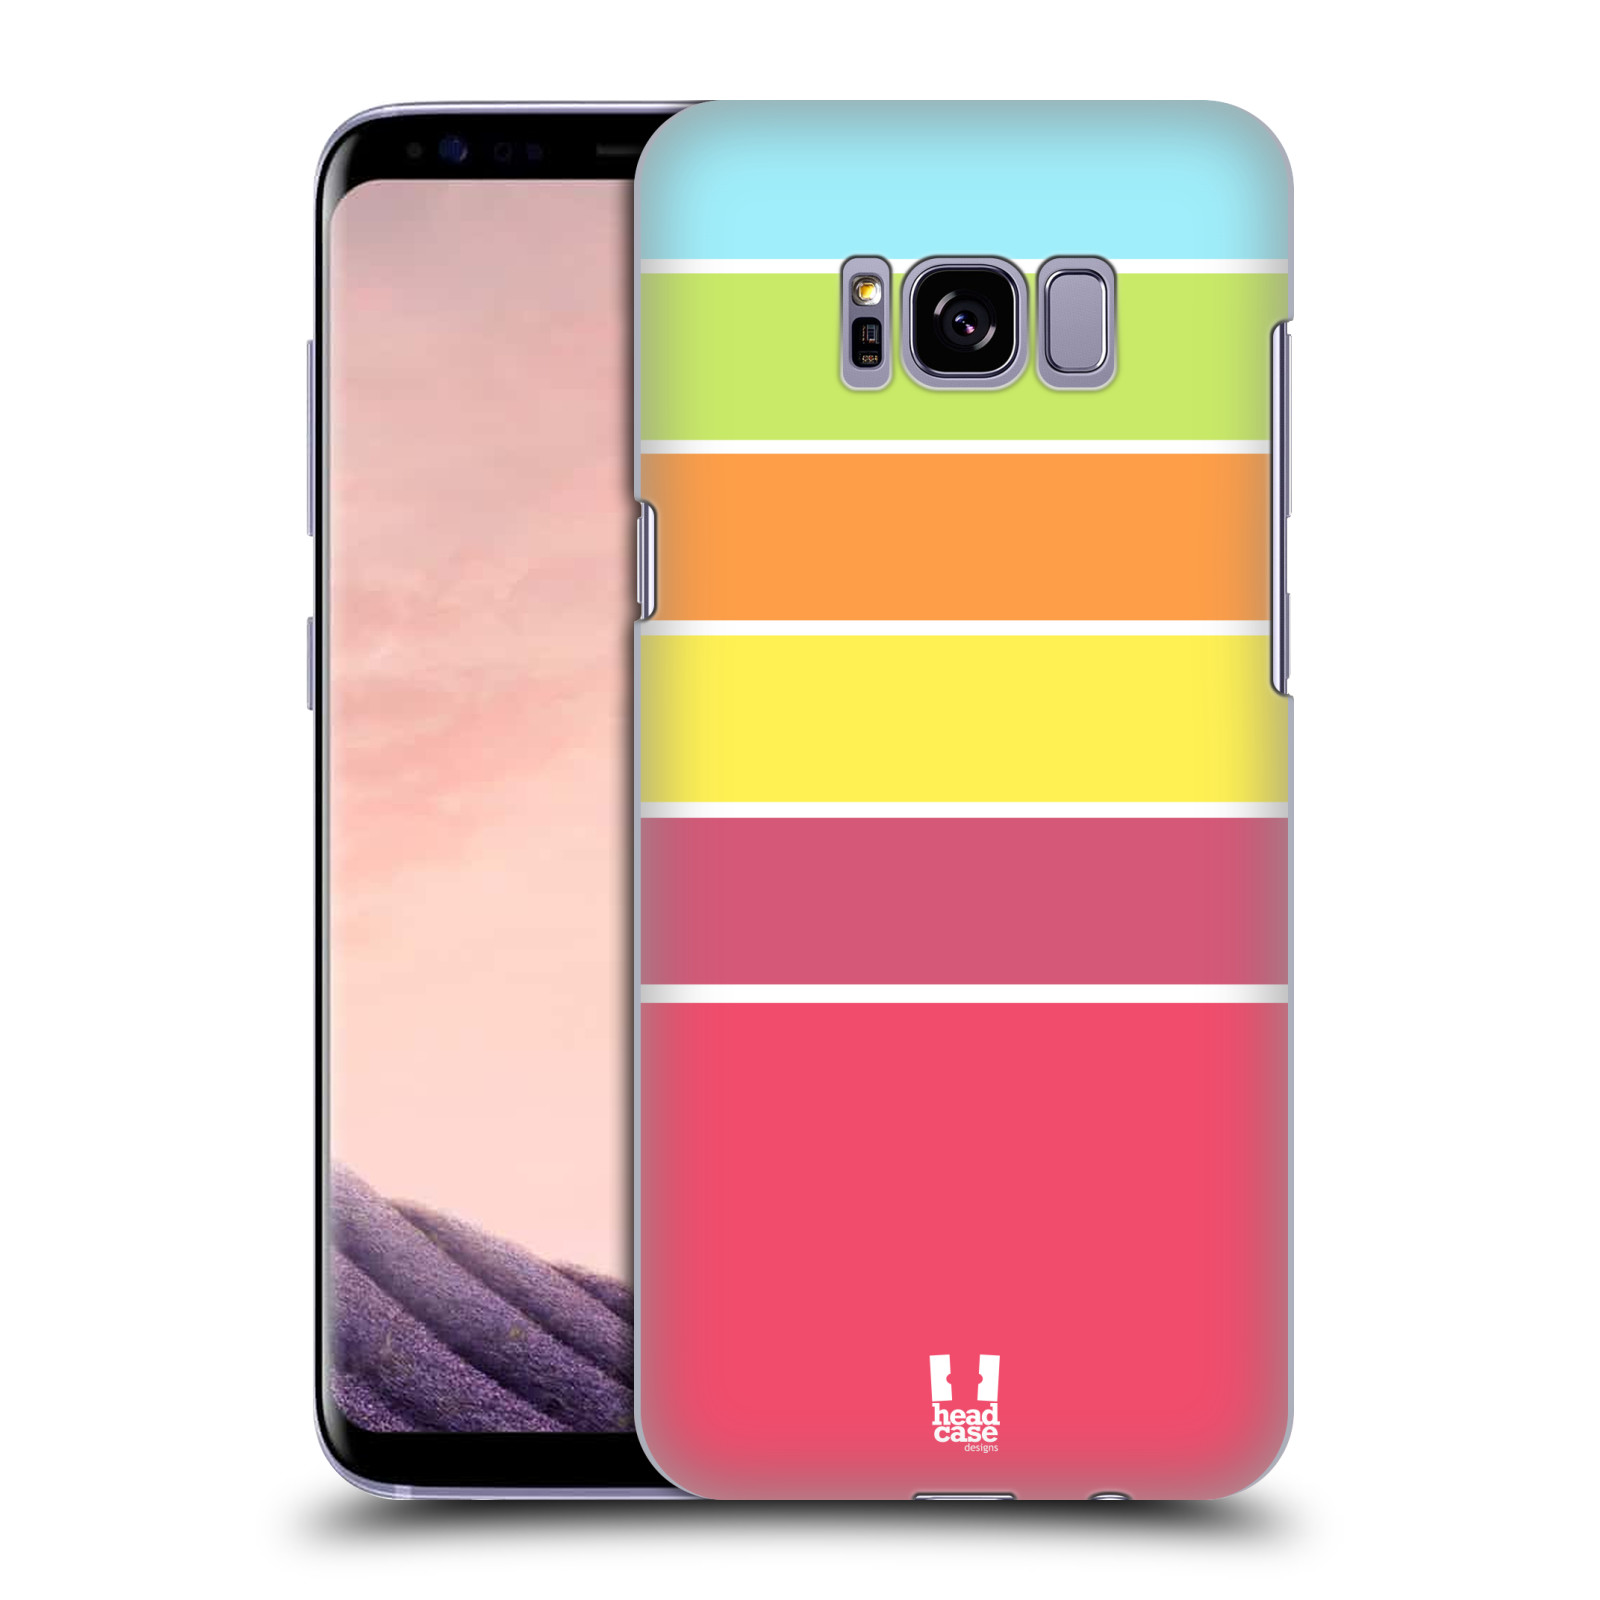 Zadní obal pro mobil Samsung Galaxy S8 PLUS - HEAD CASE - barevné pruhy růžová, oranžová